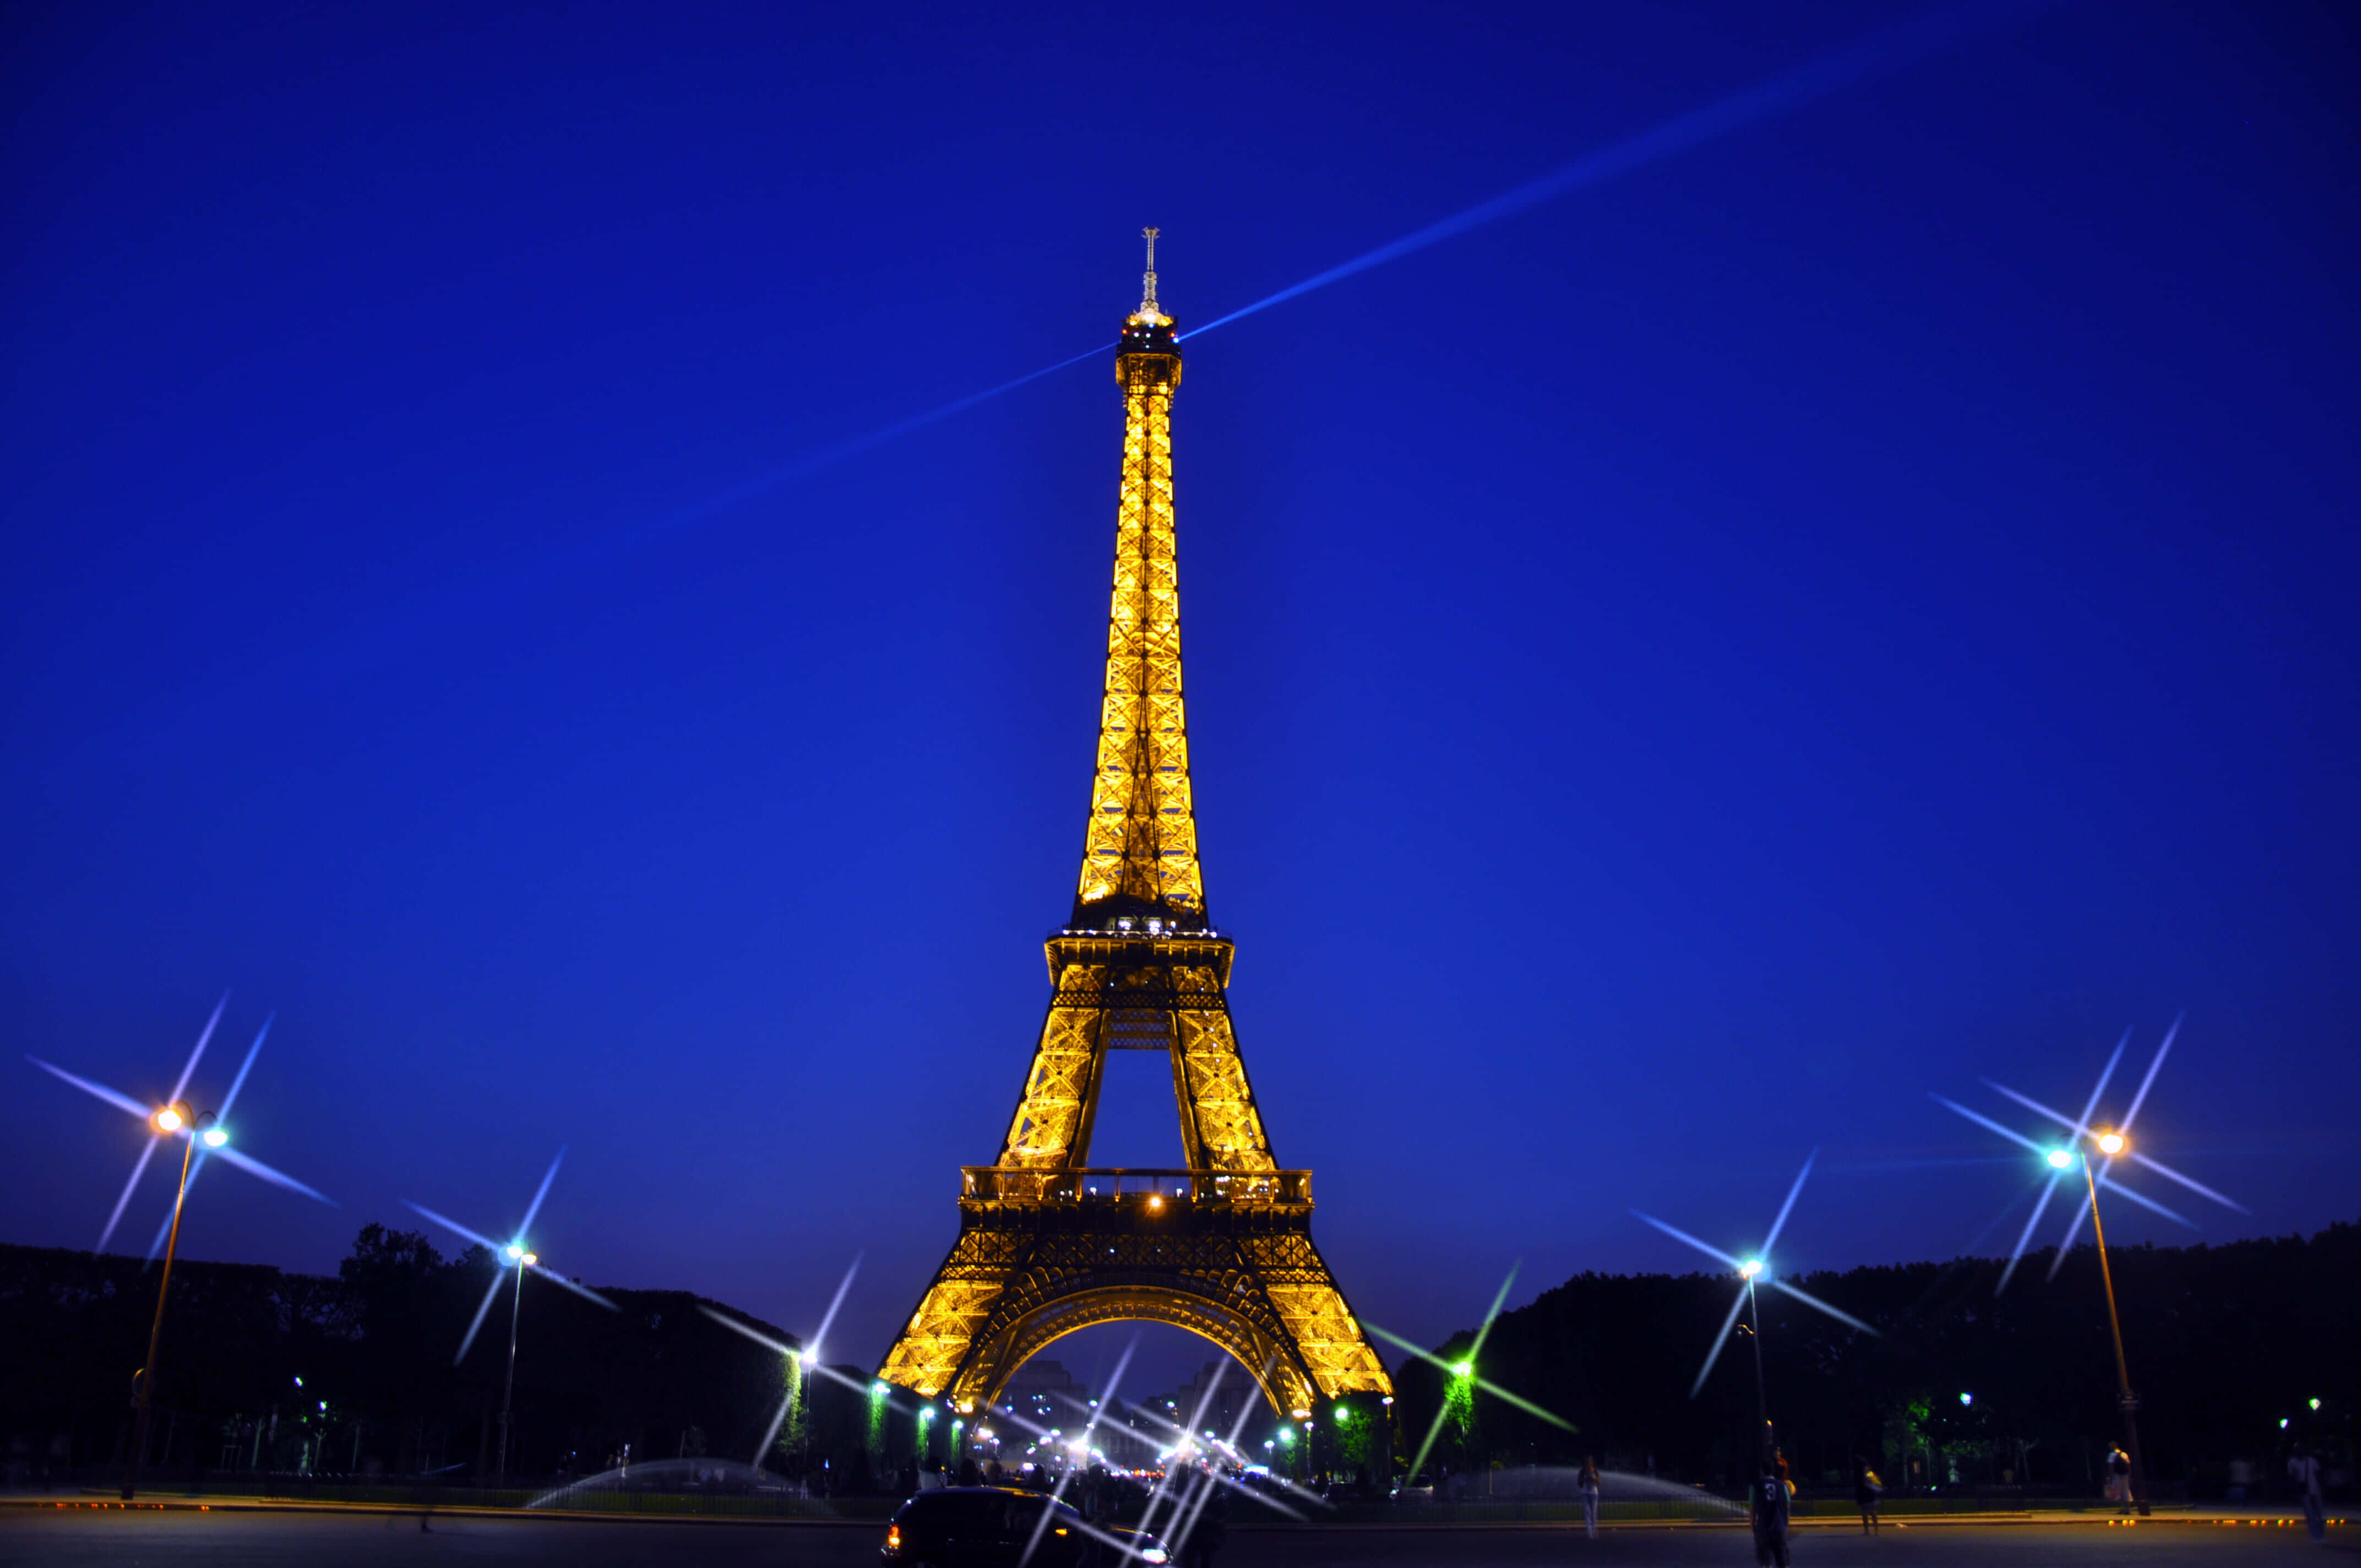 Förundrasöver Den Hisnande Utsikten Av Eiffeltornet Upplyst På Natten.